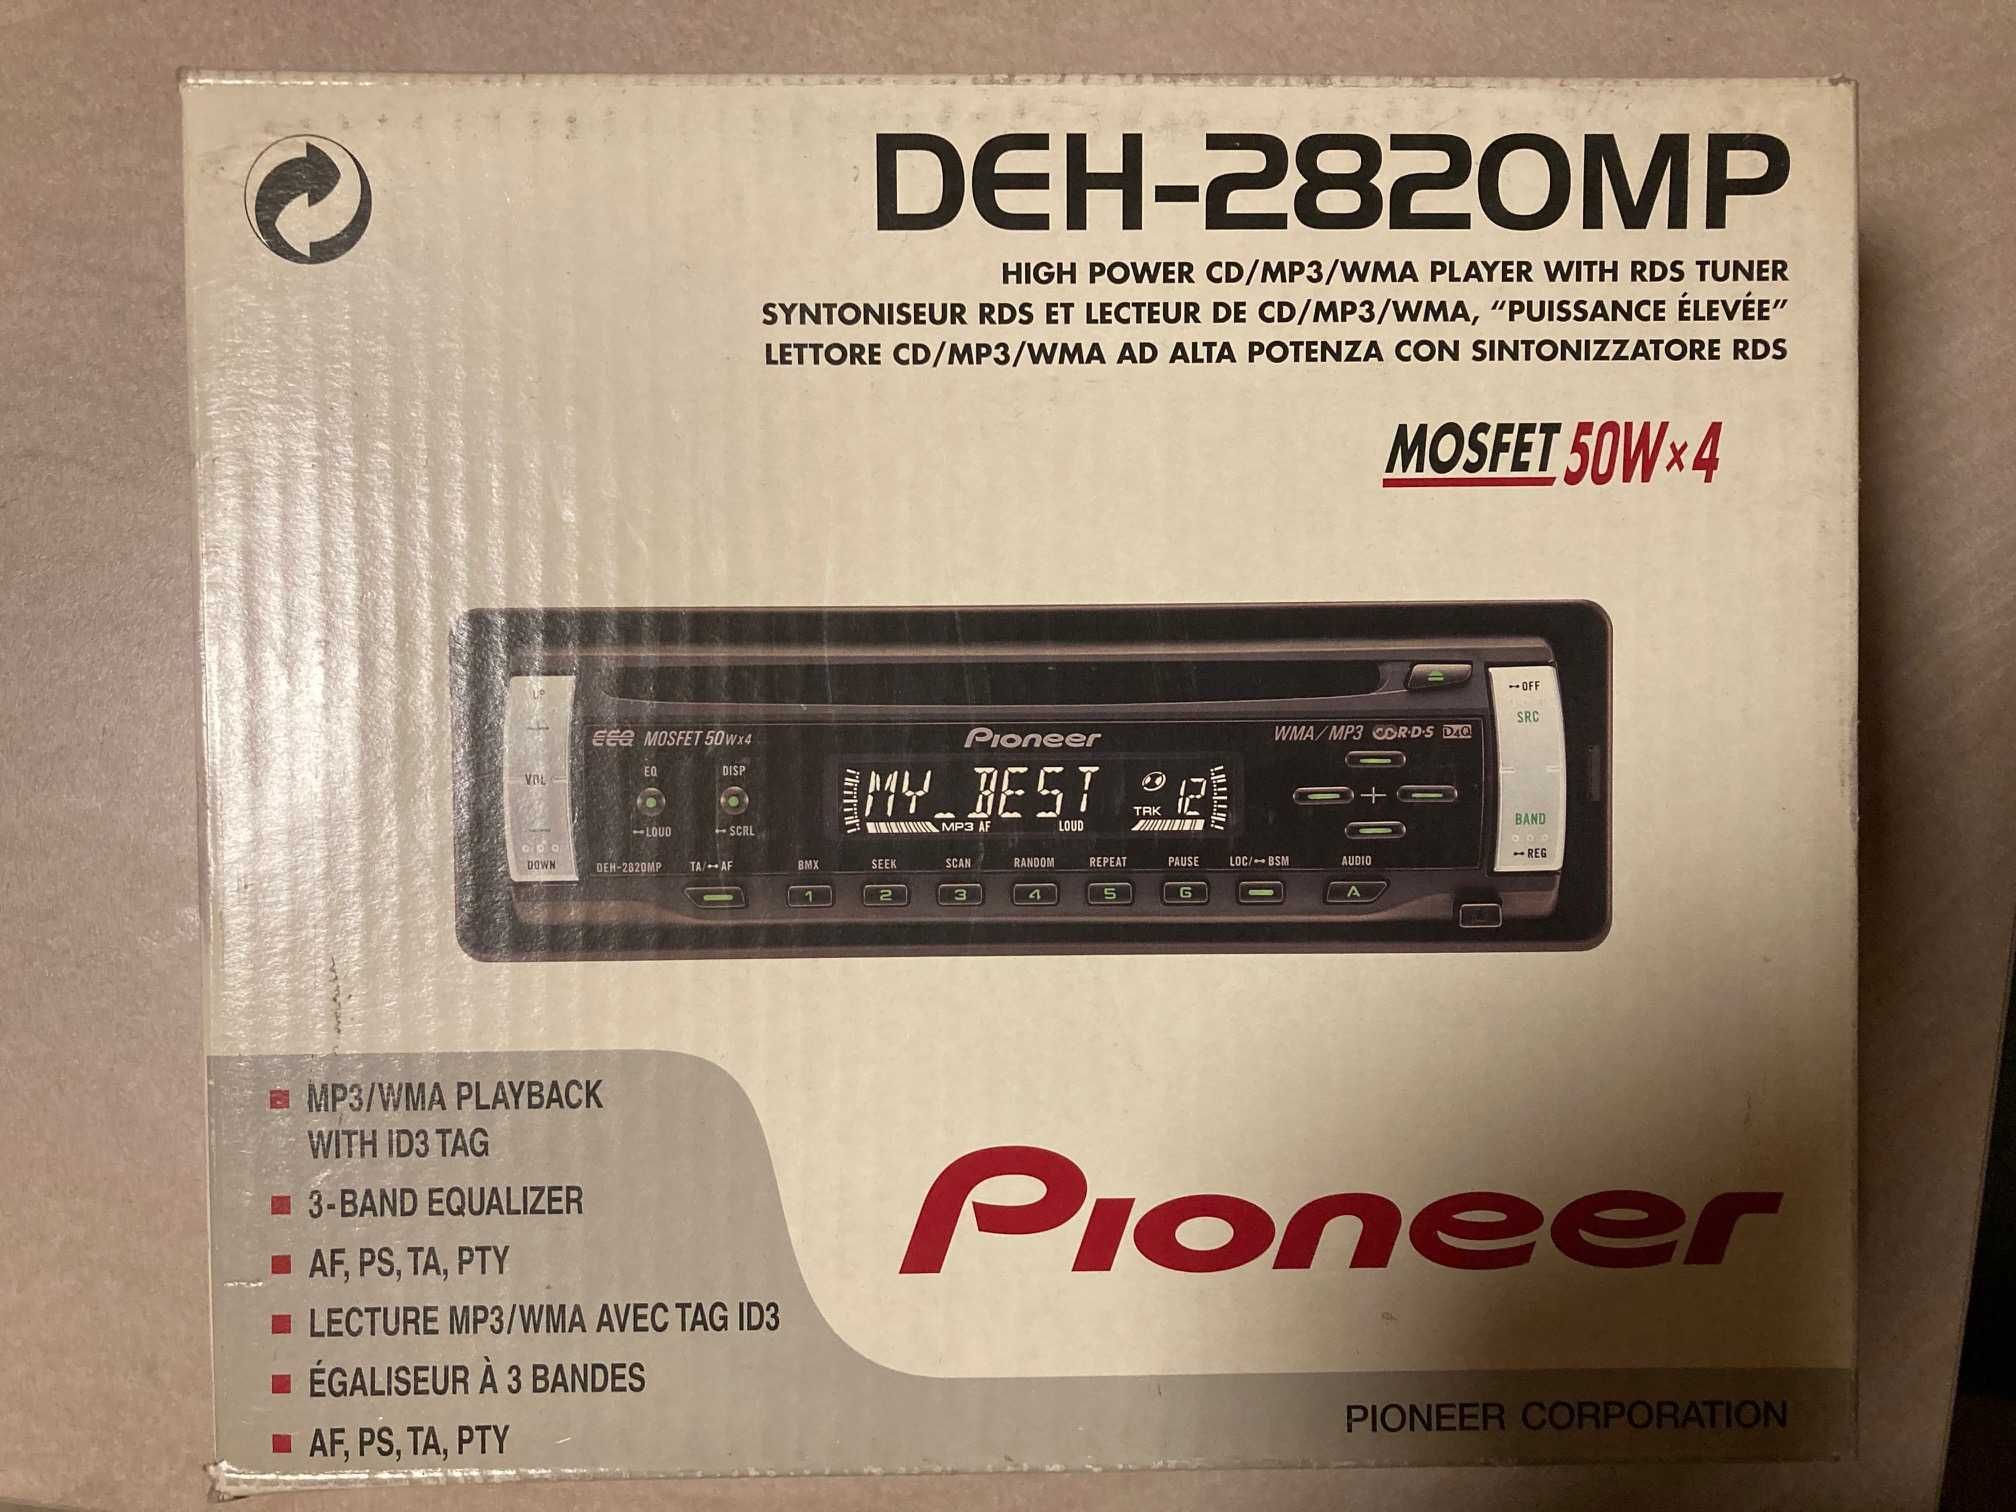 PIONEER KEH2700R – Radio samochodowe z odtwarzaczem kasetowym.